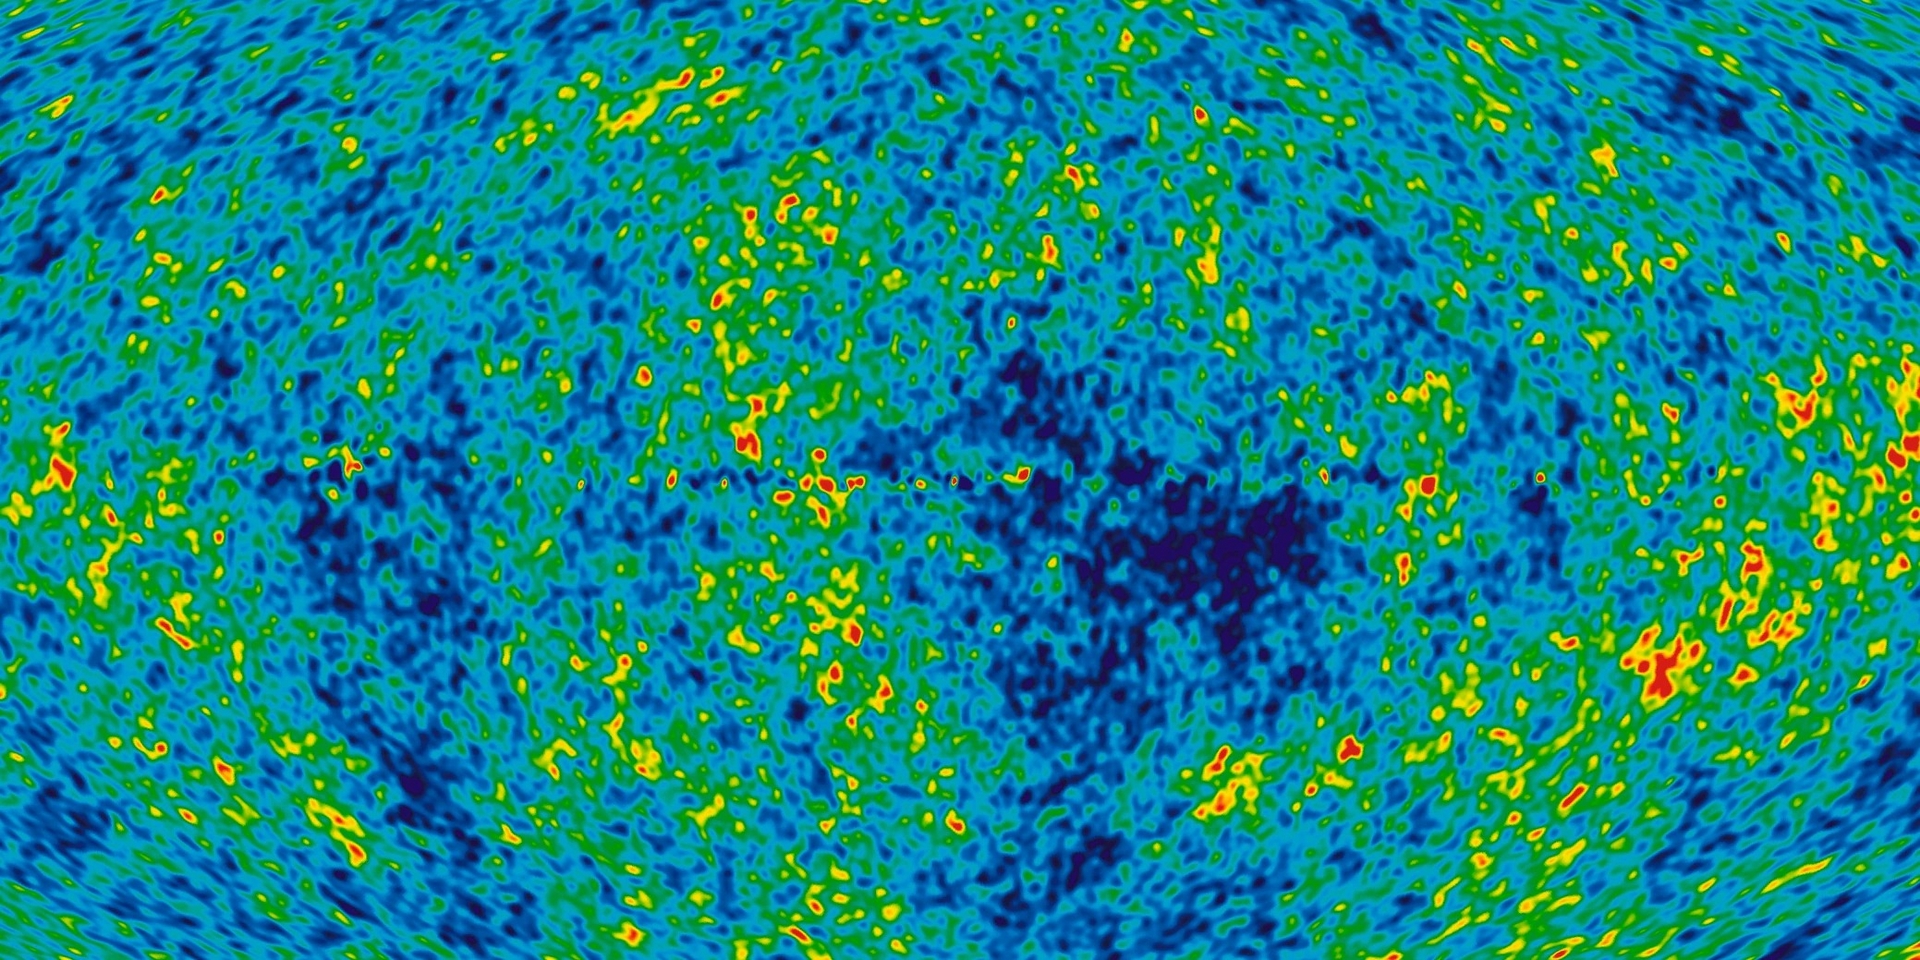 這張圖片顯示了宇宙中最古老的光──在大霹靂（Big Bang）後不久釋放出的宇宙微波背景。這道界線標示著可觀測宇宙的邊緣，不過科學家已經提出了一些理論，討論可能存在這道界限之外的事物。IMAGE COURTESY WMAP/NASA